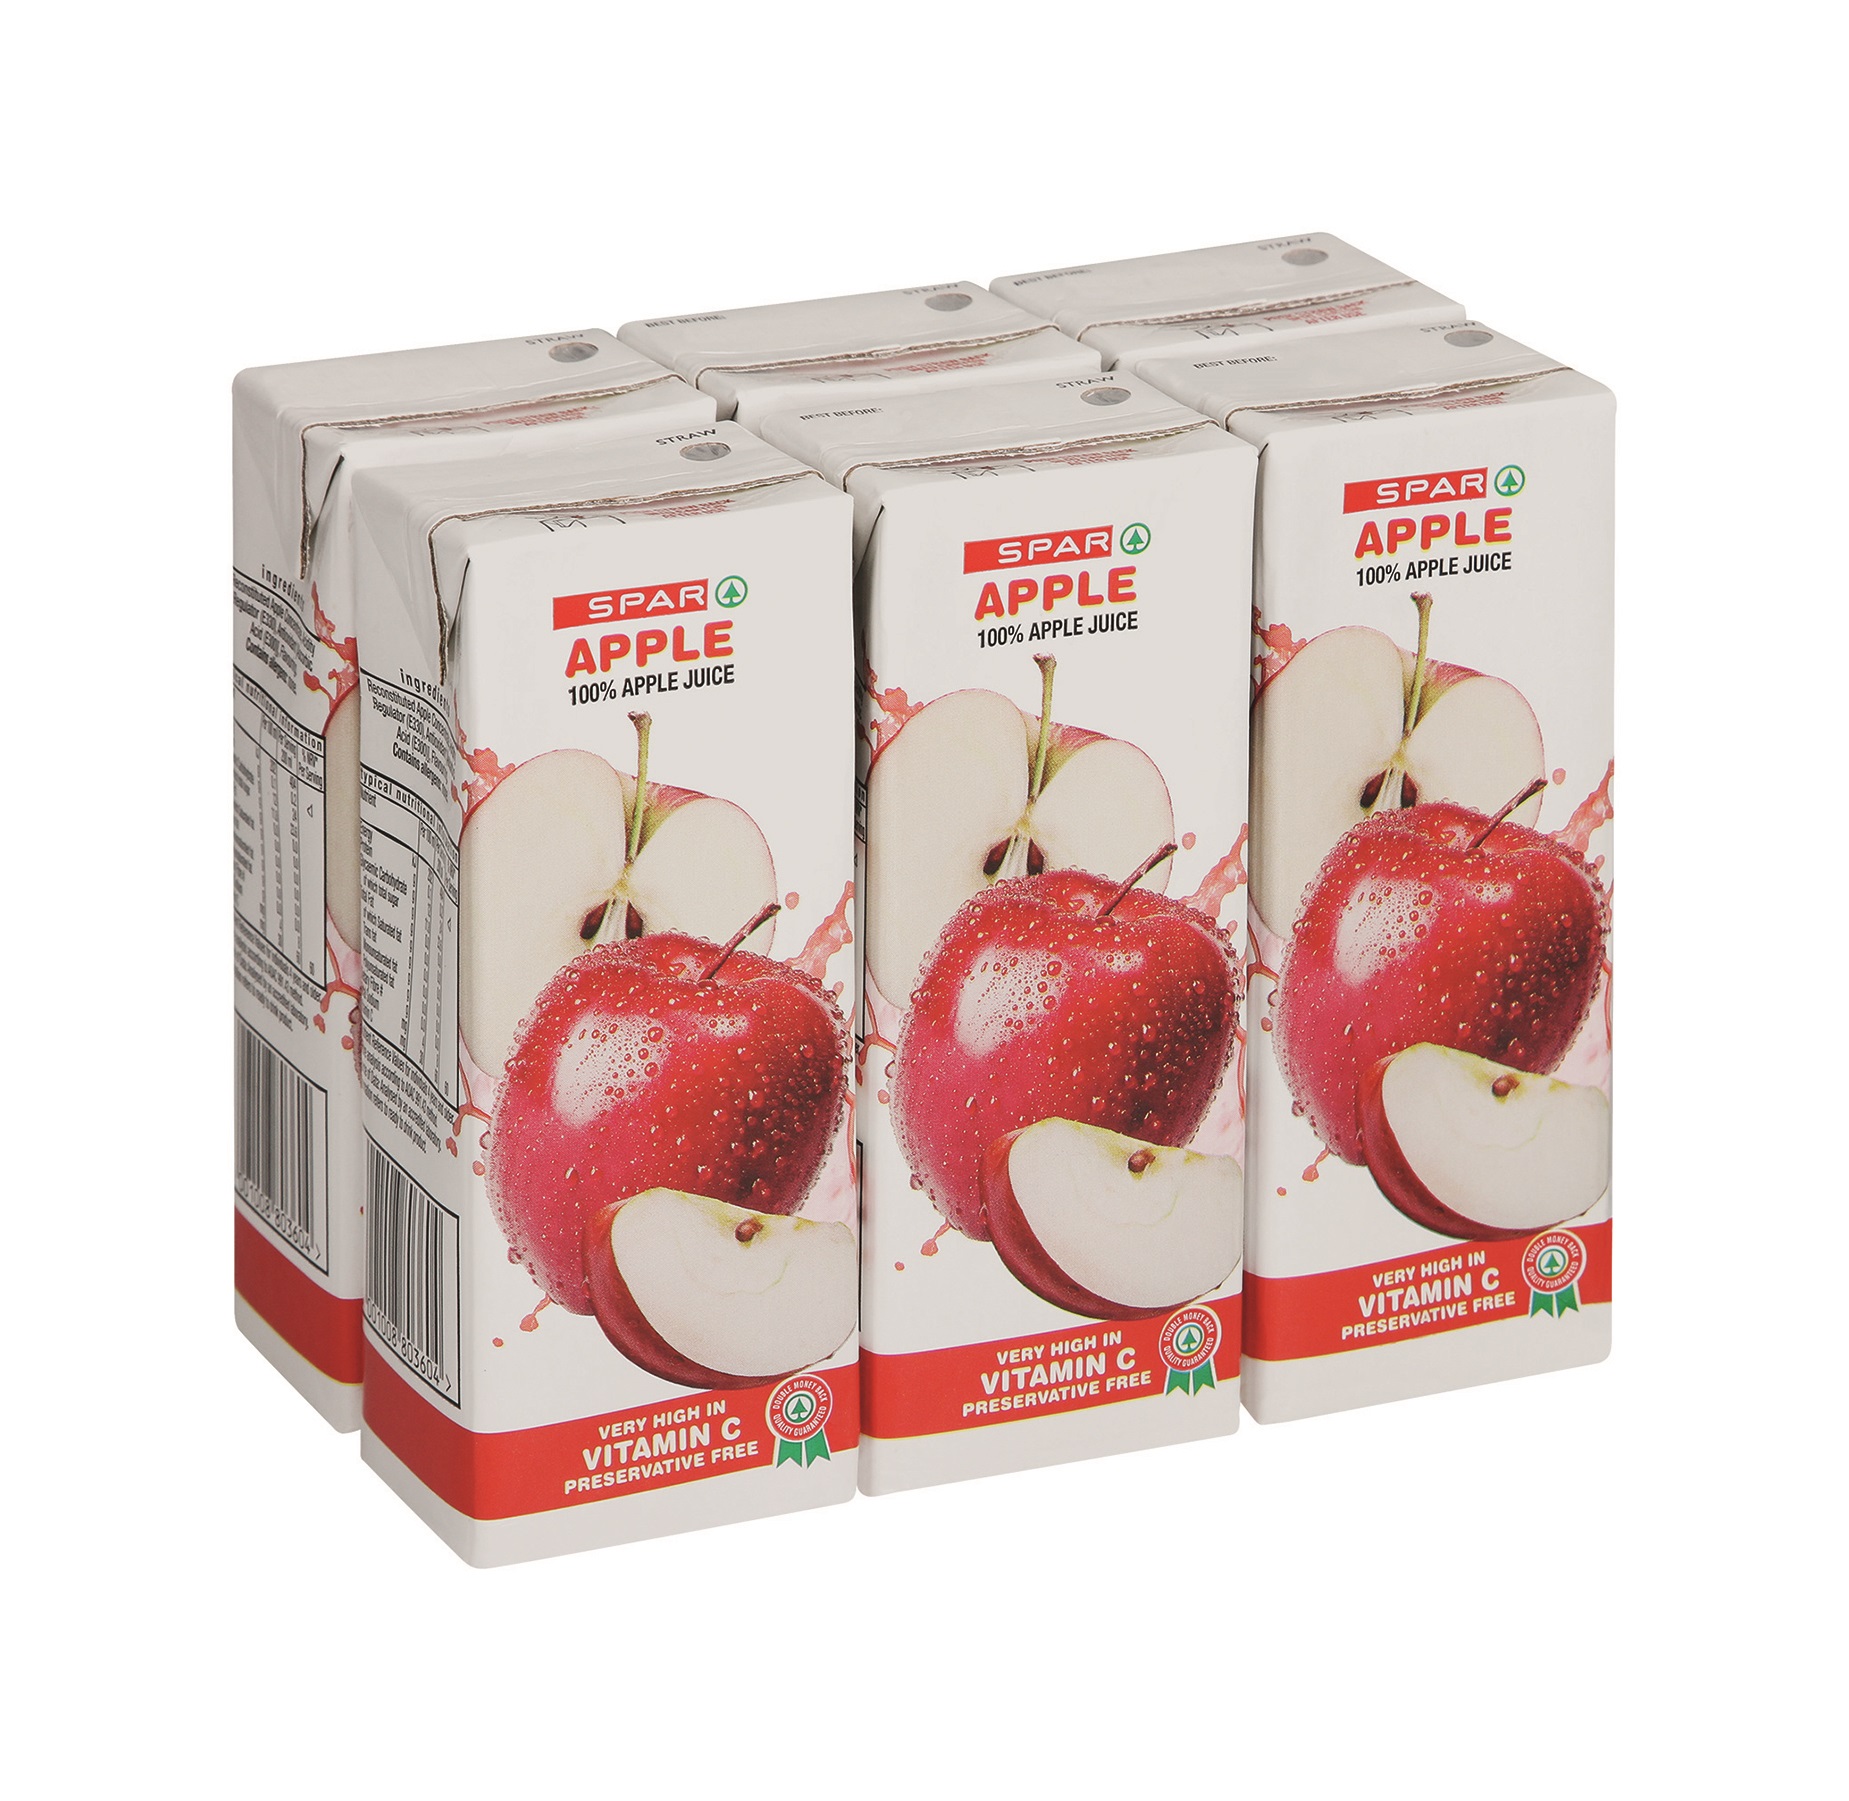 100% fruit juice blend - apple